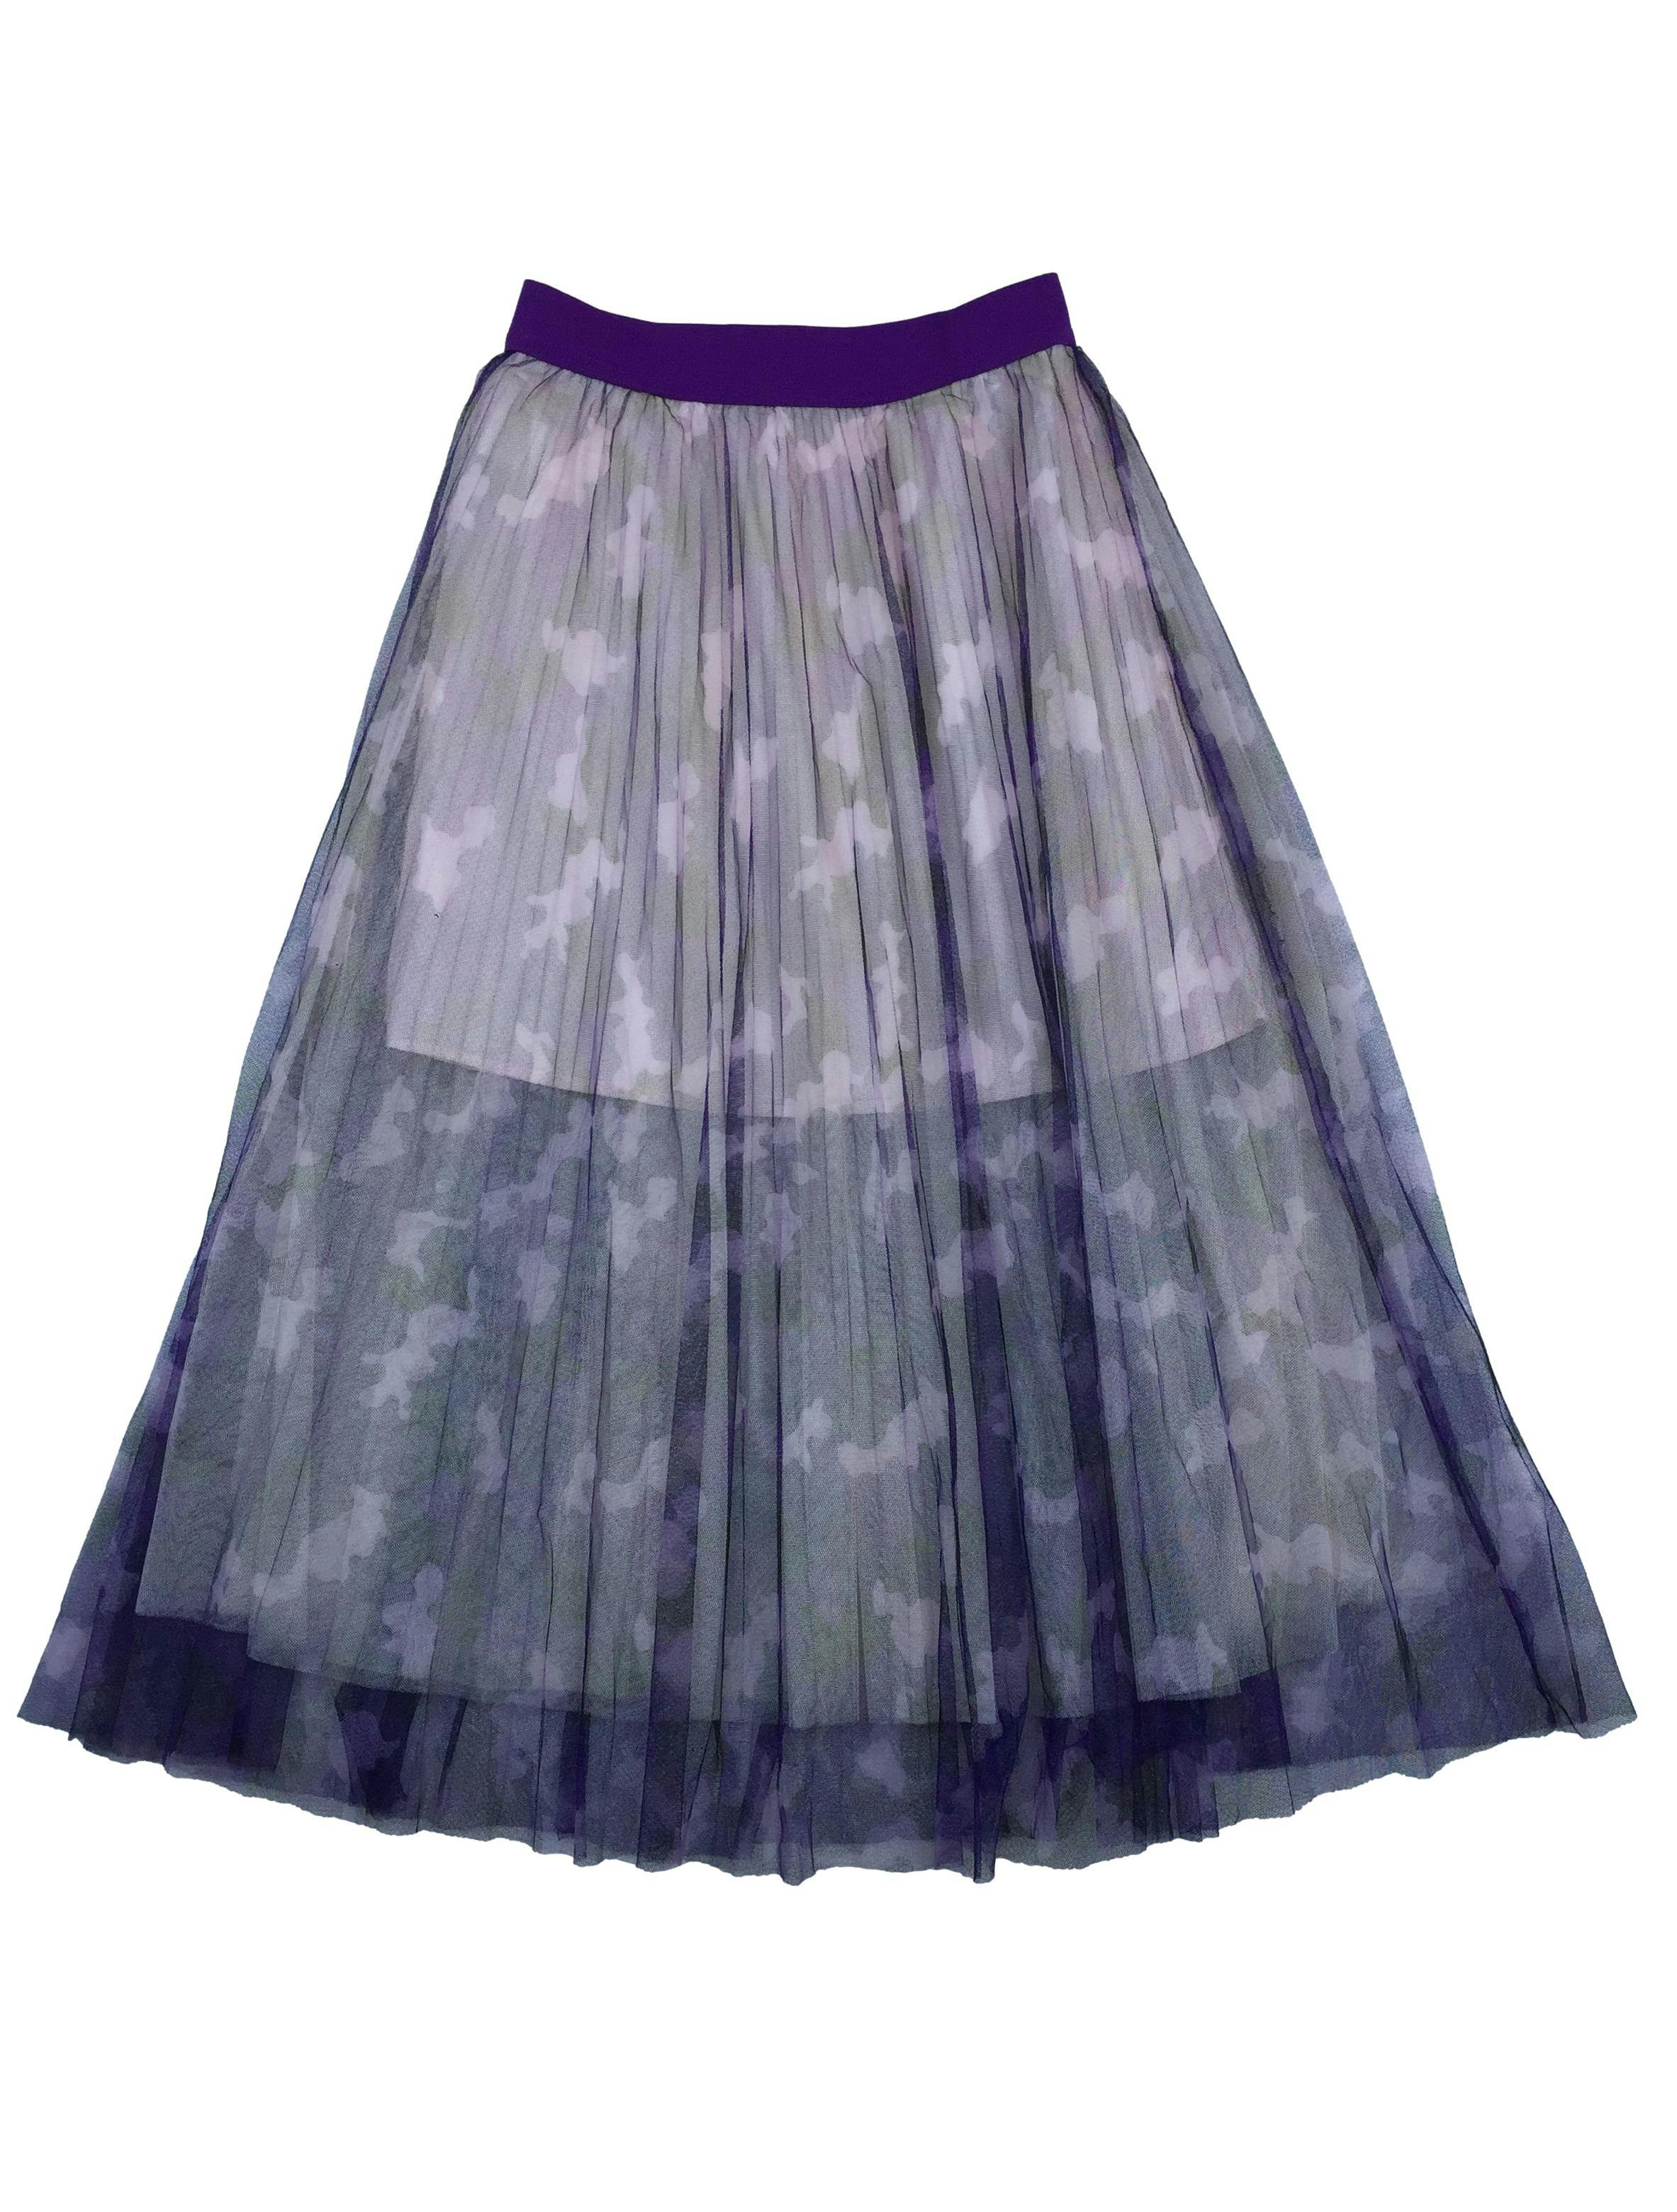 Falda de mesh plisado 3 capas con forro, cintura elástica. Cintura 62cm Largo 82cm